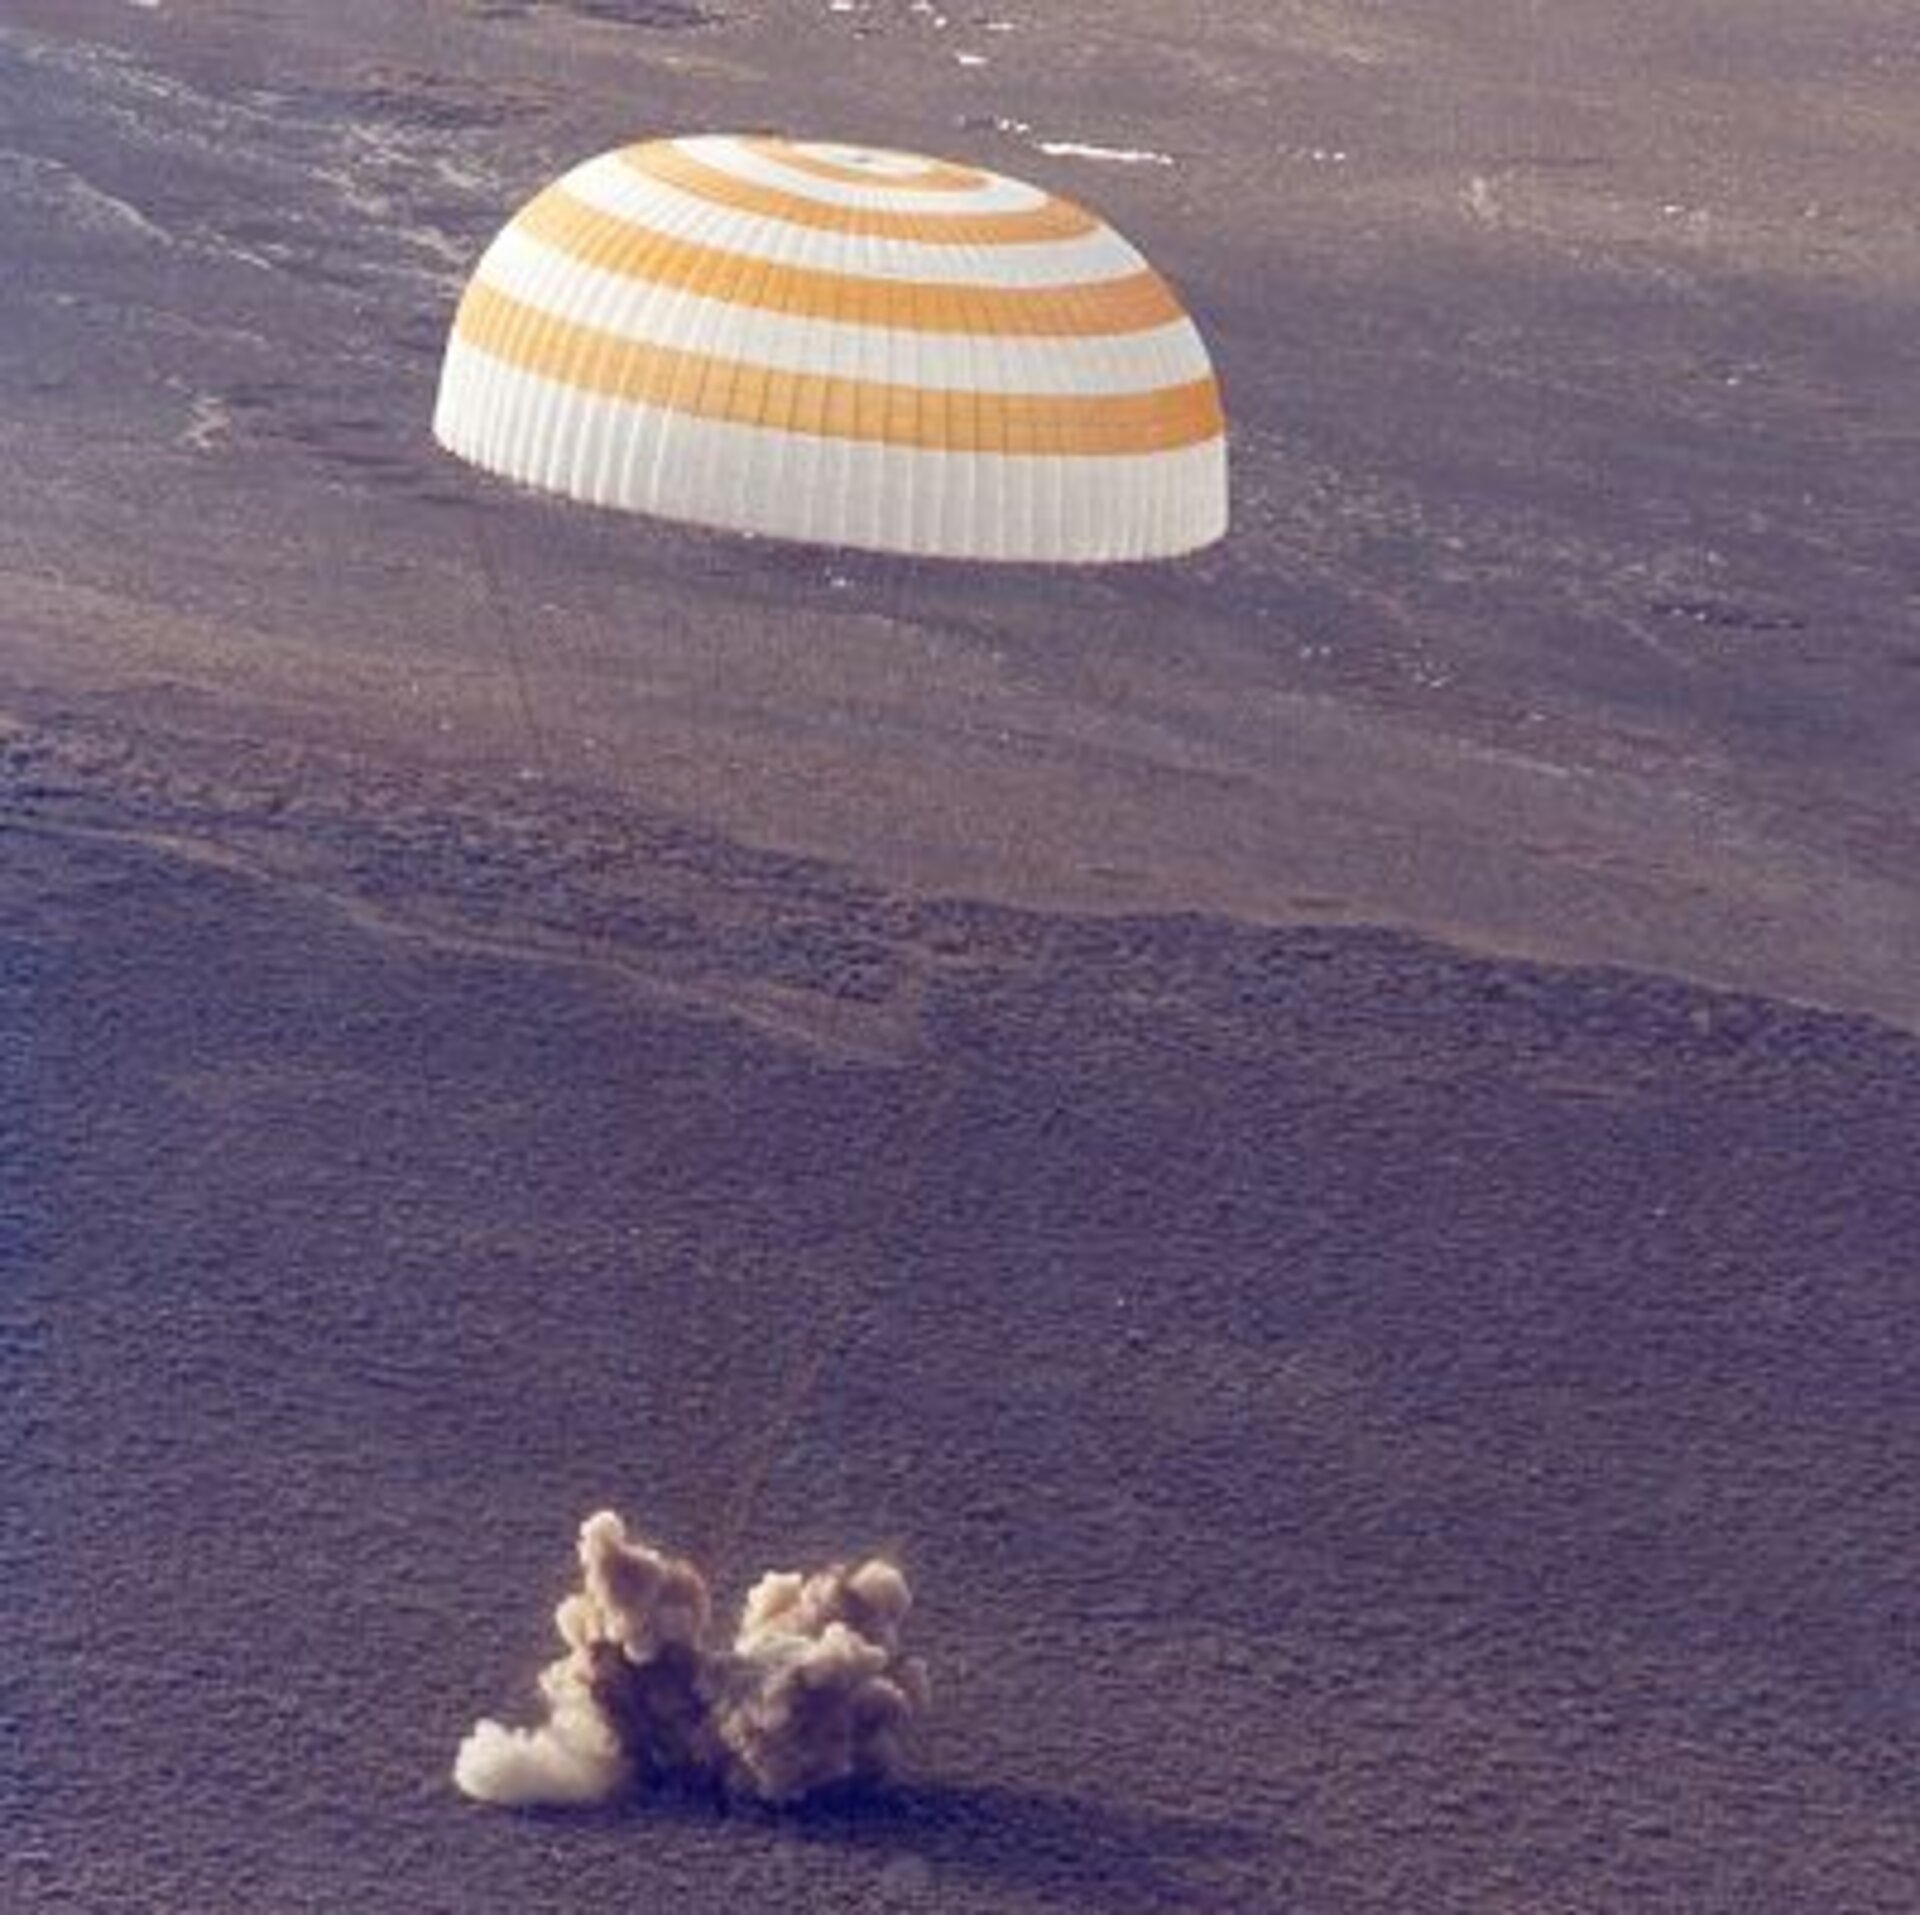 Soyuz capsule during landing